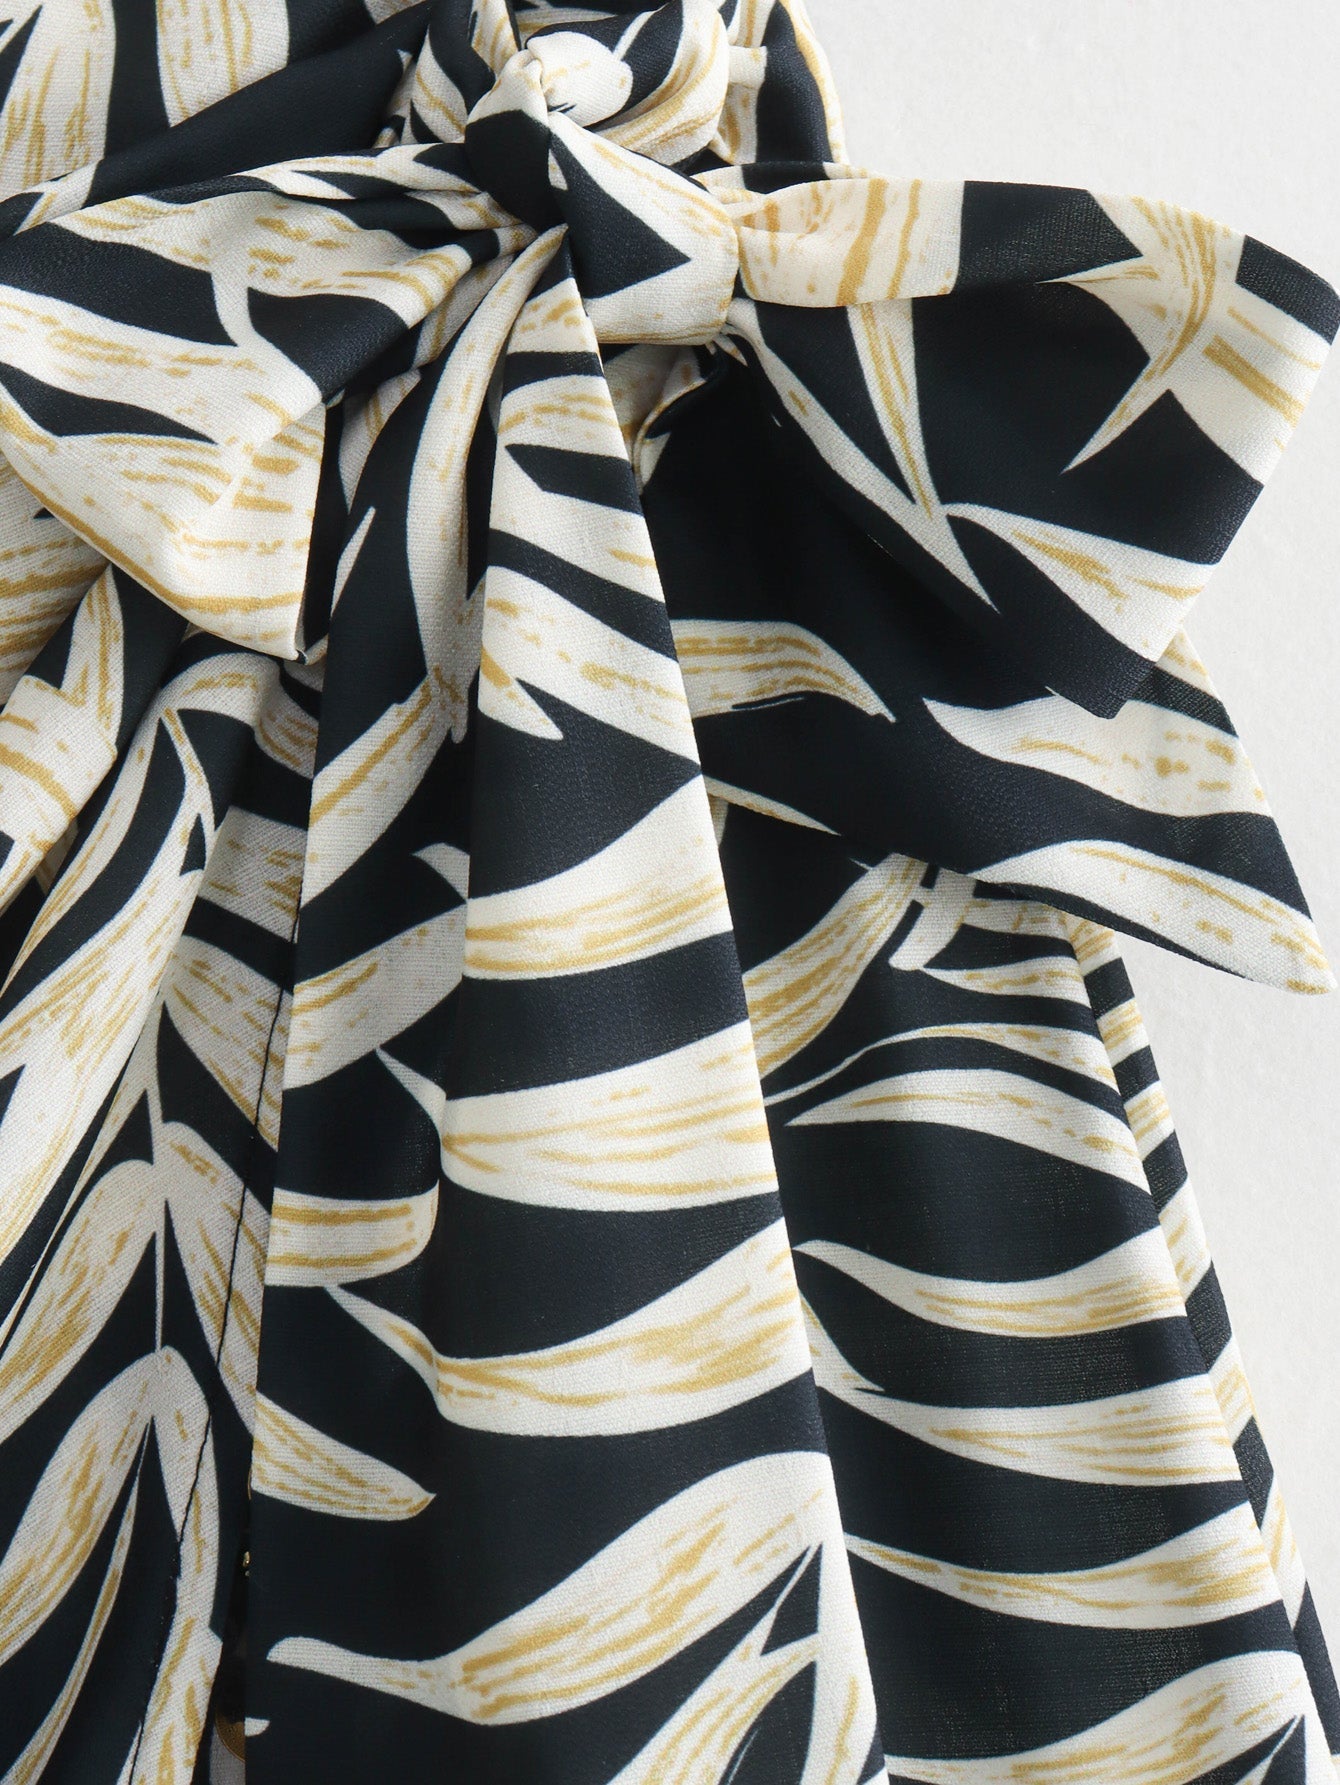 Printed Tassel Skirt for Women Slightly Mature Design